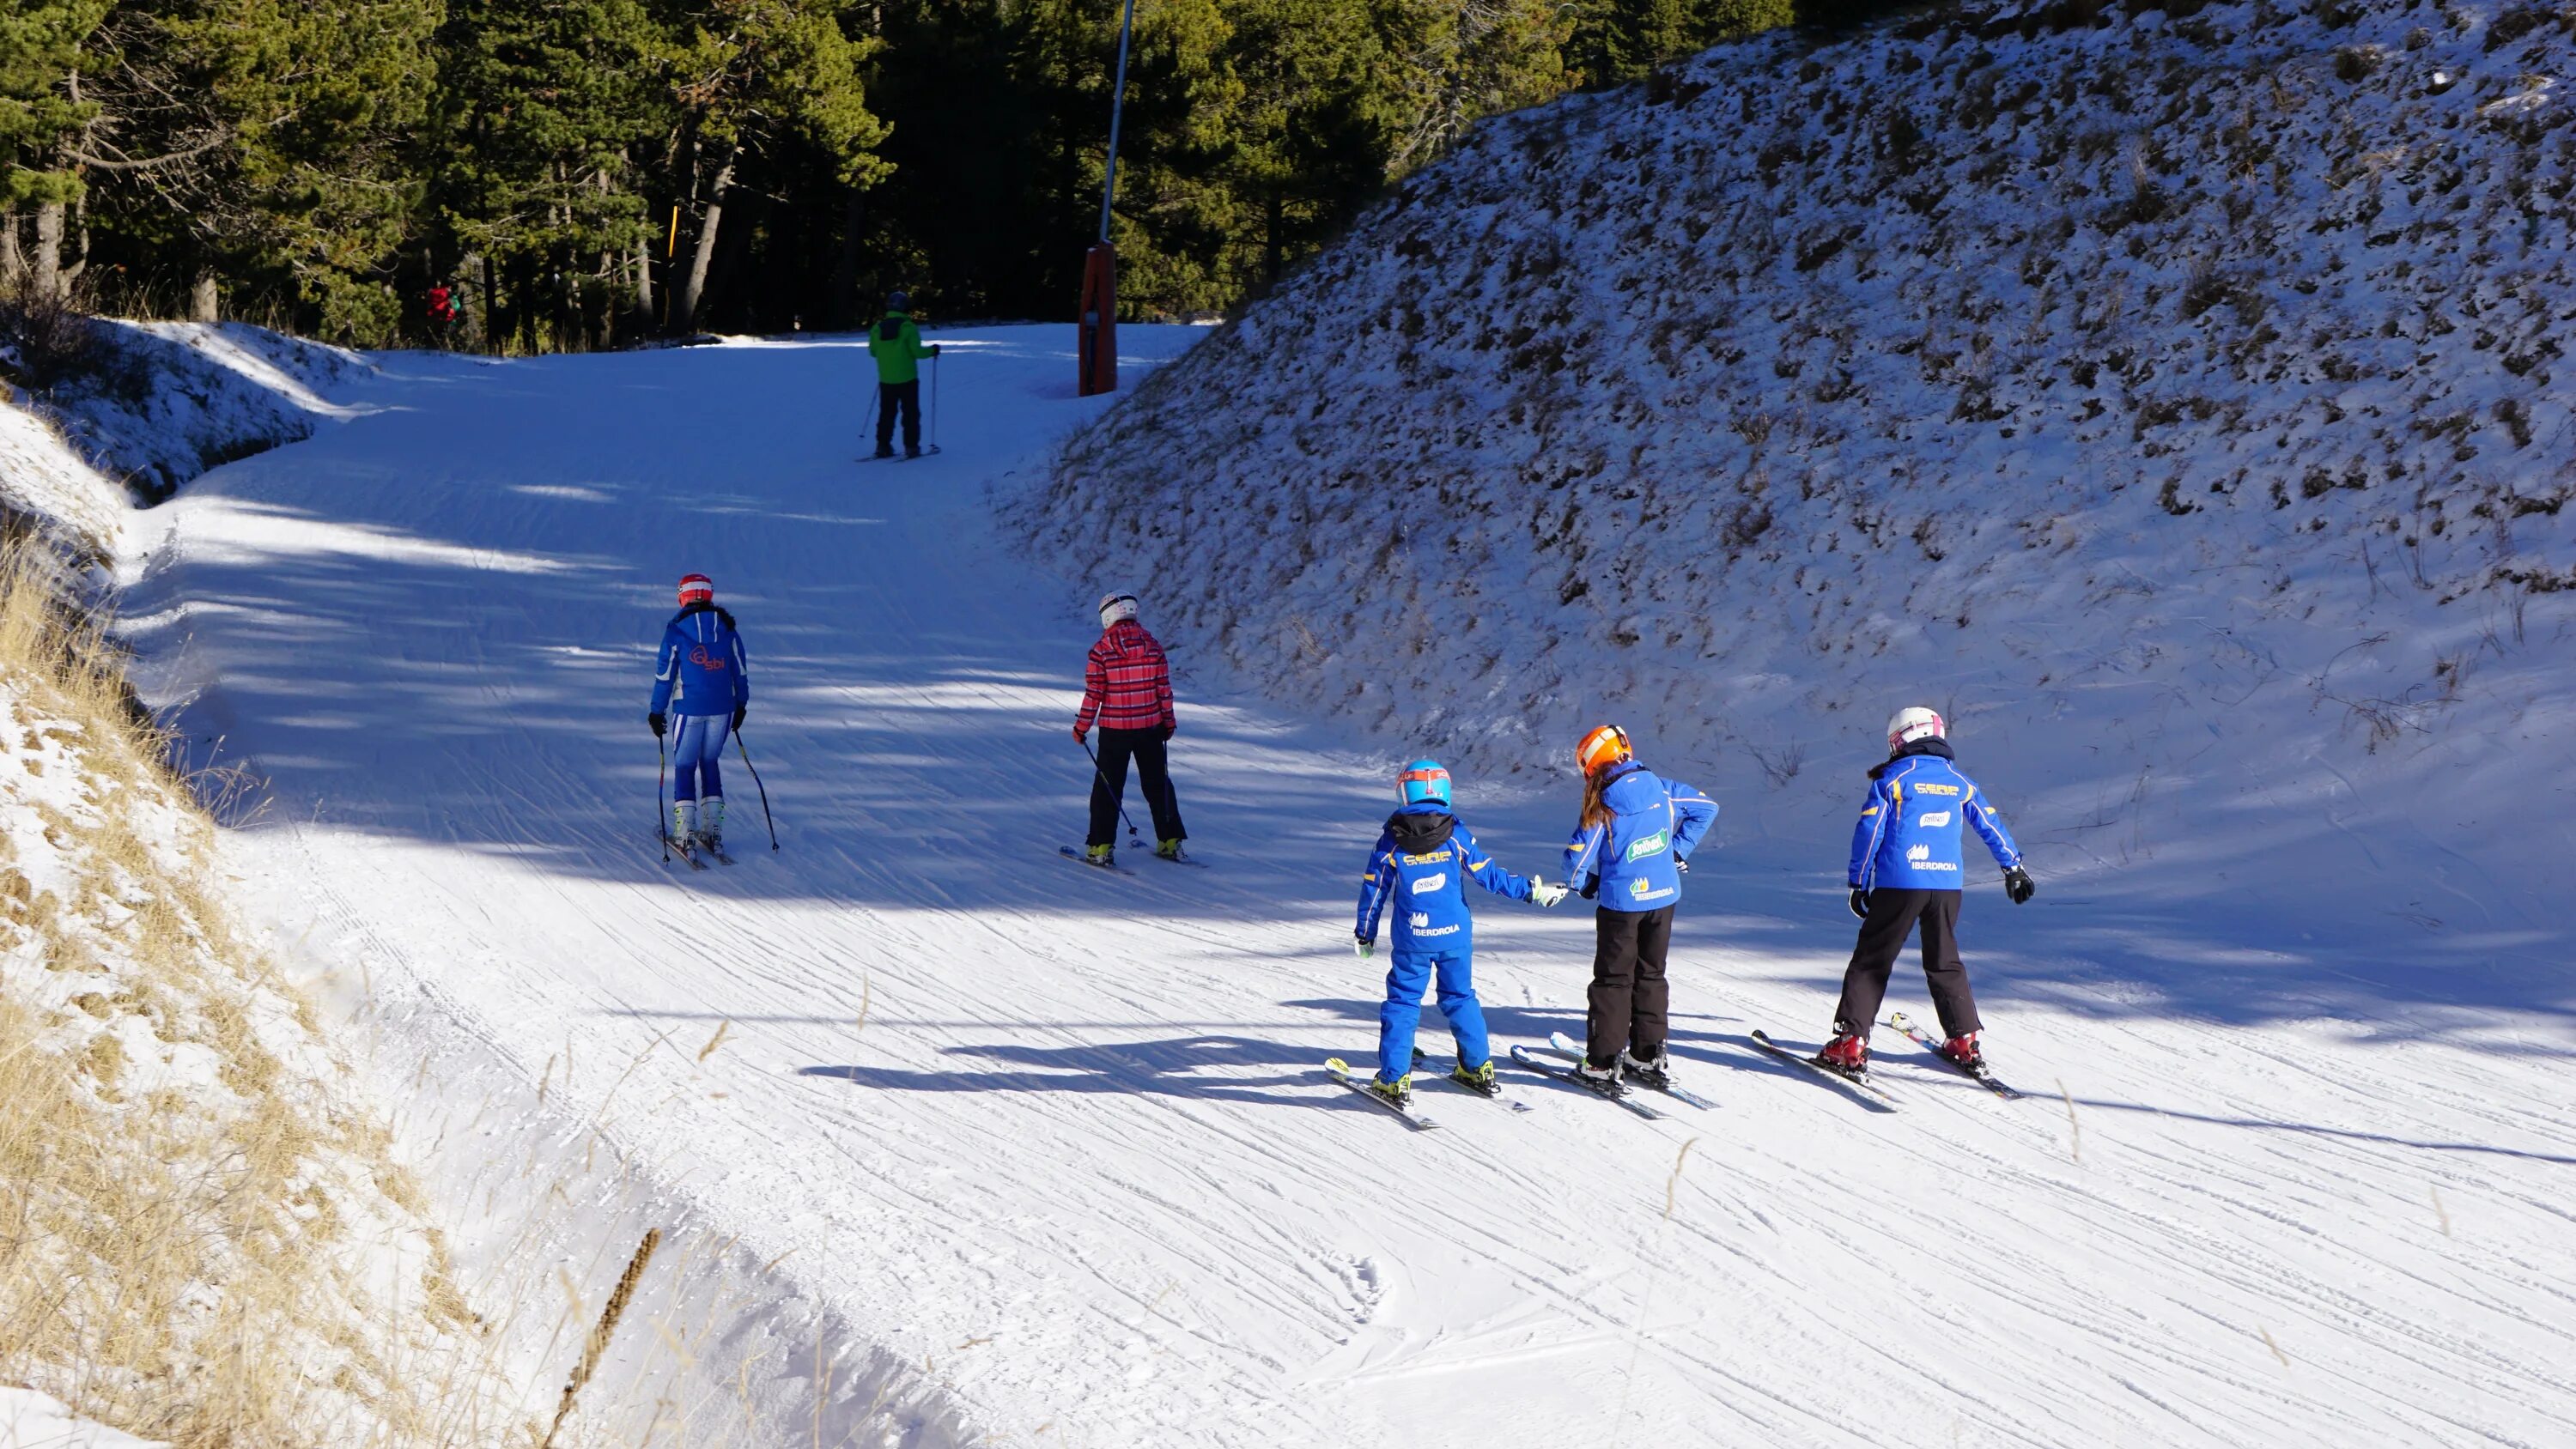 Лыжная трасса. Снежная трасса лыжная. Горнолыжный склон. Зимние покатушки на лыжах.